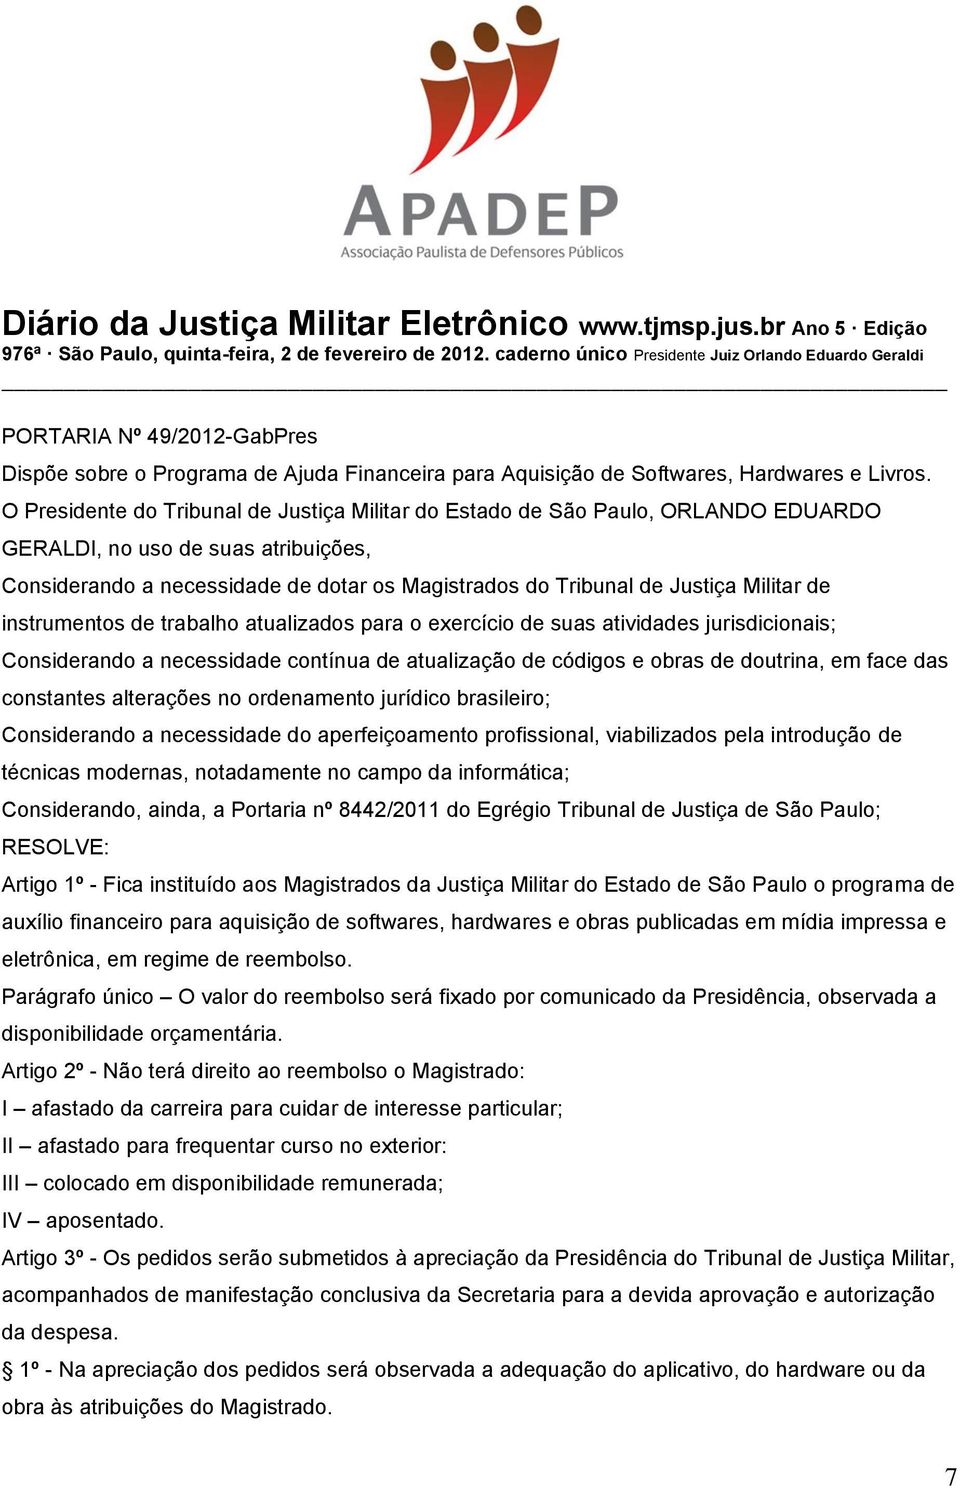 O Presidente do Tribunal de Justiça Militar do Estado de São Paulo, ORLANDO EDUARDO GERALDI, no uso de suas atribuições, Considerando a necessidade de dotar os Magistrados do Tribunal de Justiça